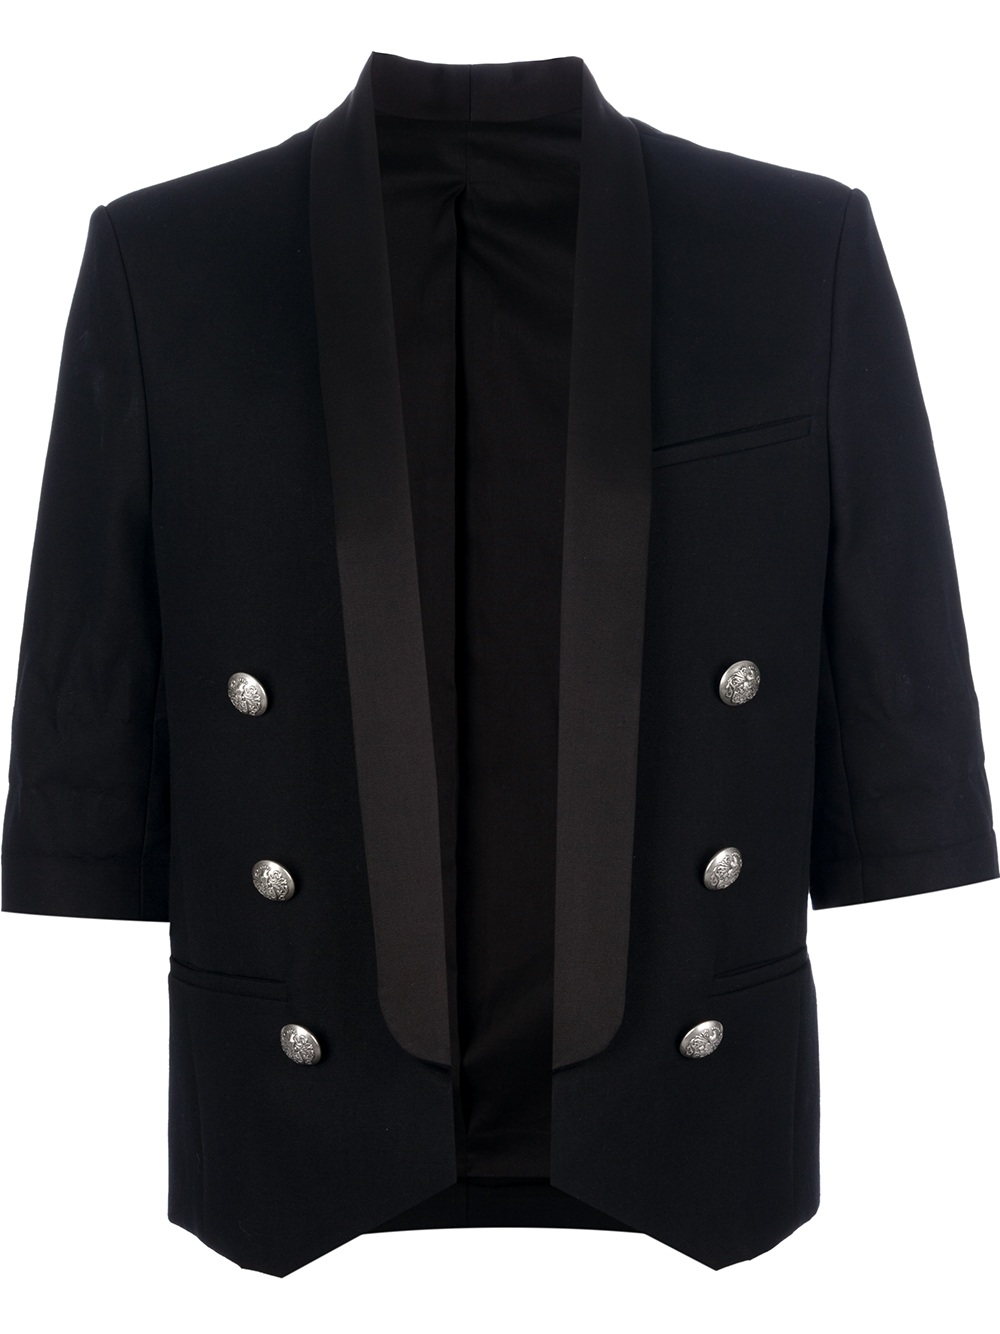 Balmain Cropped Tuxedo Style Jacket in Black for Men | Lyst